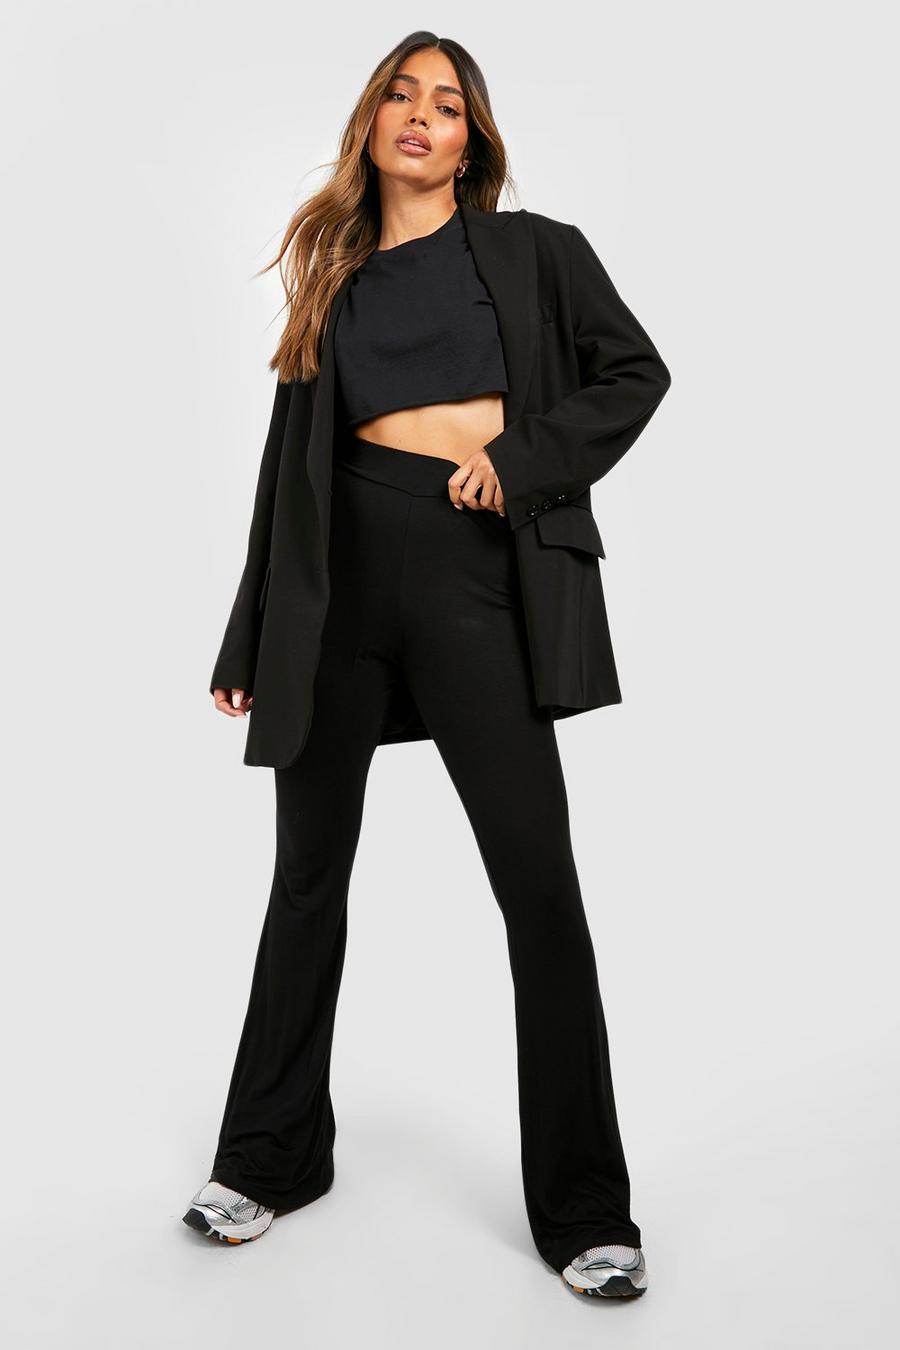 שחור nero בייסיק high waist הדוק + מכנסיים מתרחבים